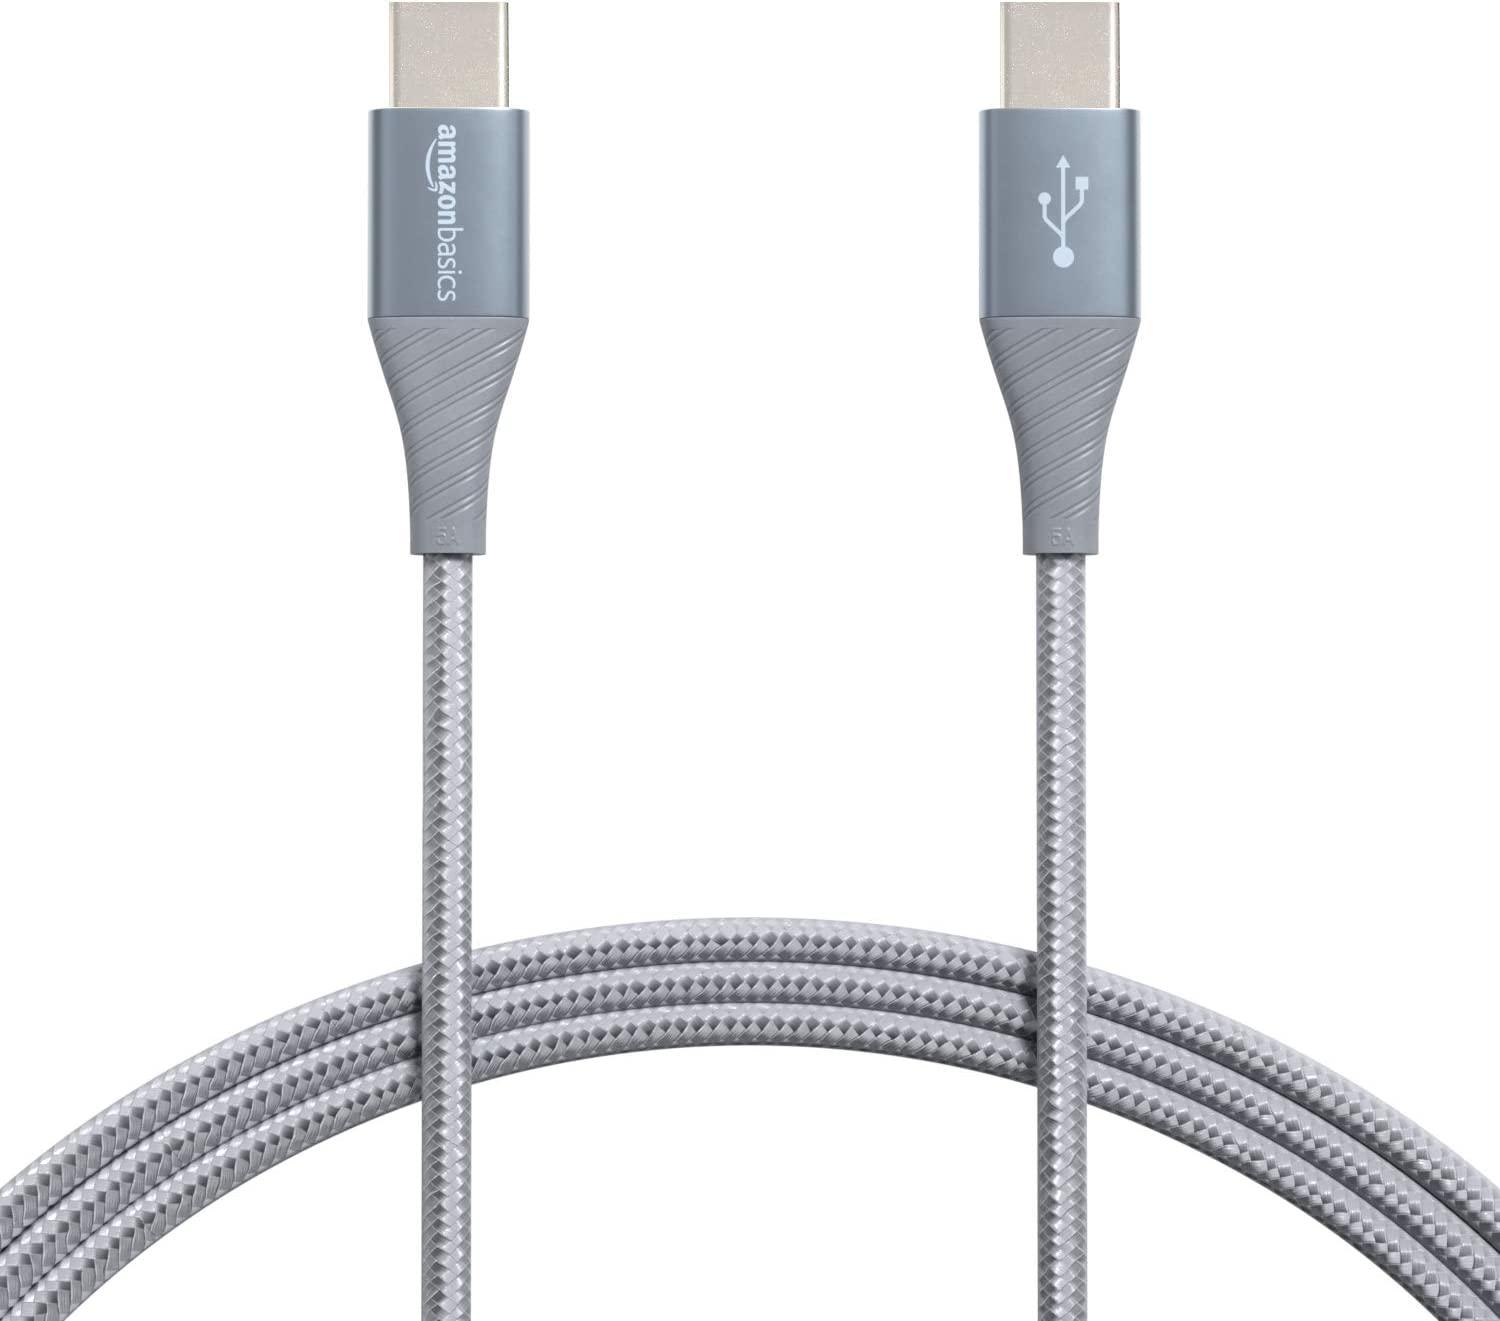 Amazon Basics Aluminum 6ft USB-C Cable for $5.22